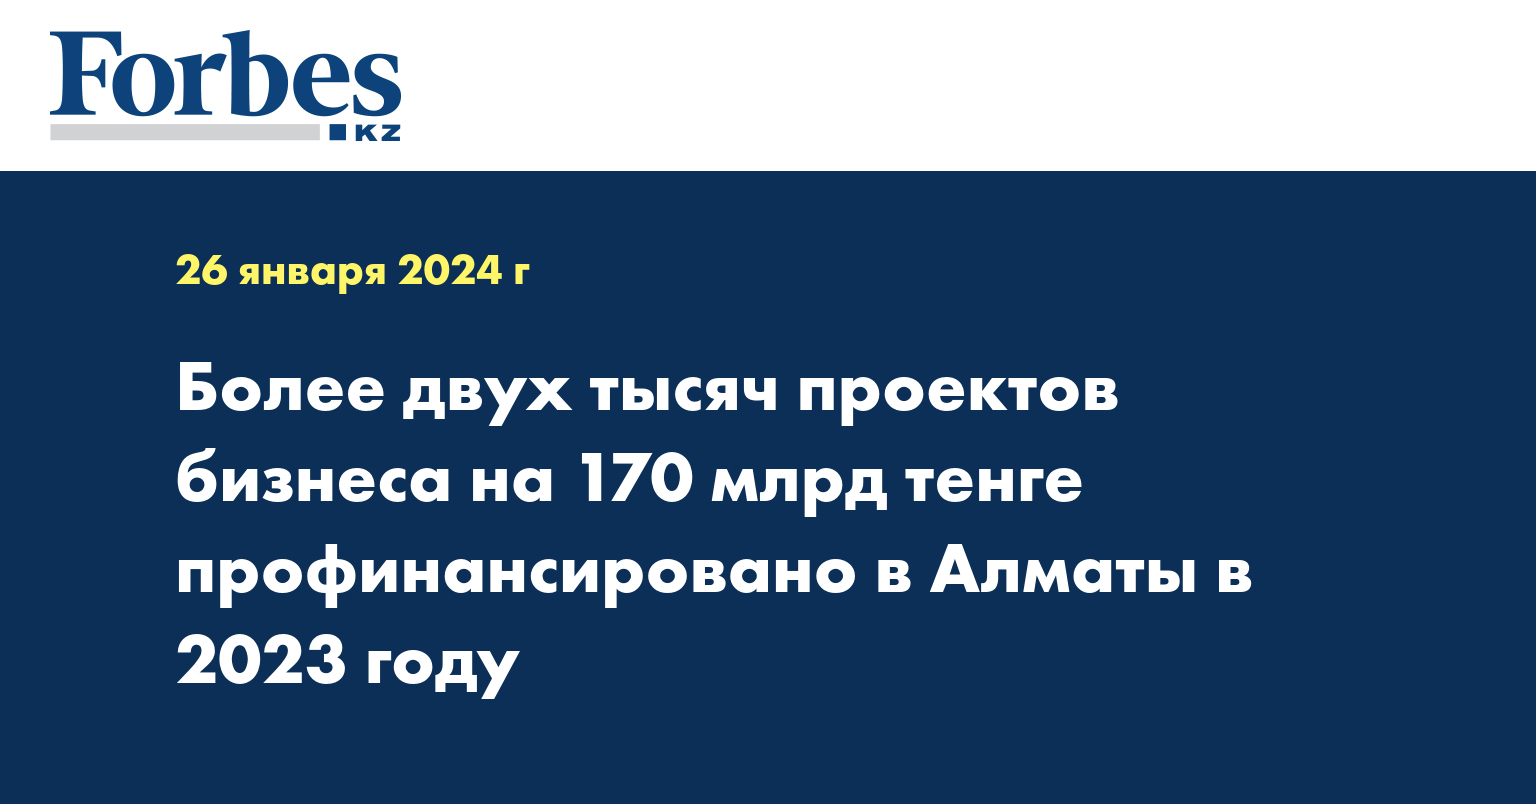 Более двух тысяч проектов бизнеса на 170 млрд тенге профинансировано в Алматы в 2023 году